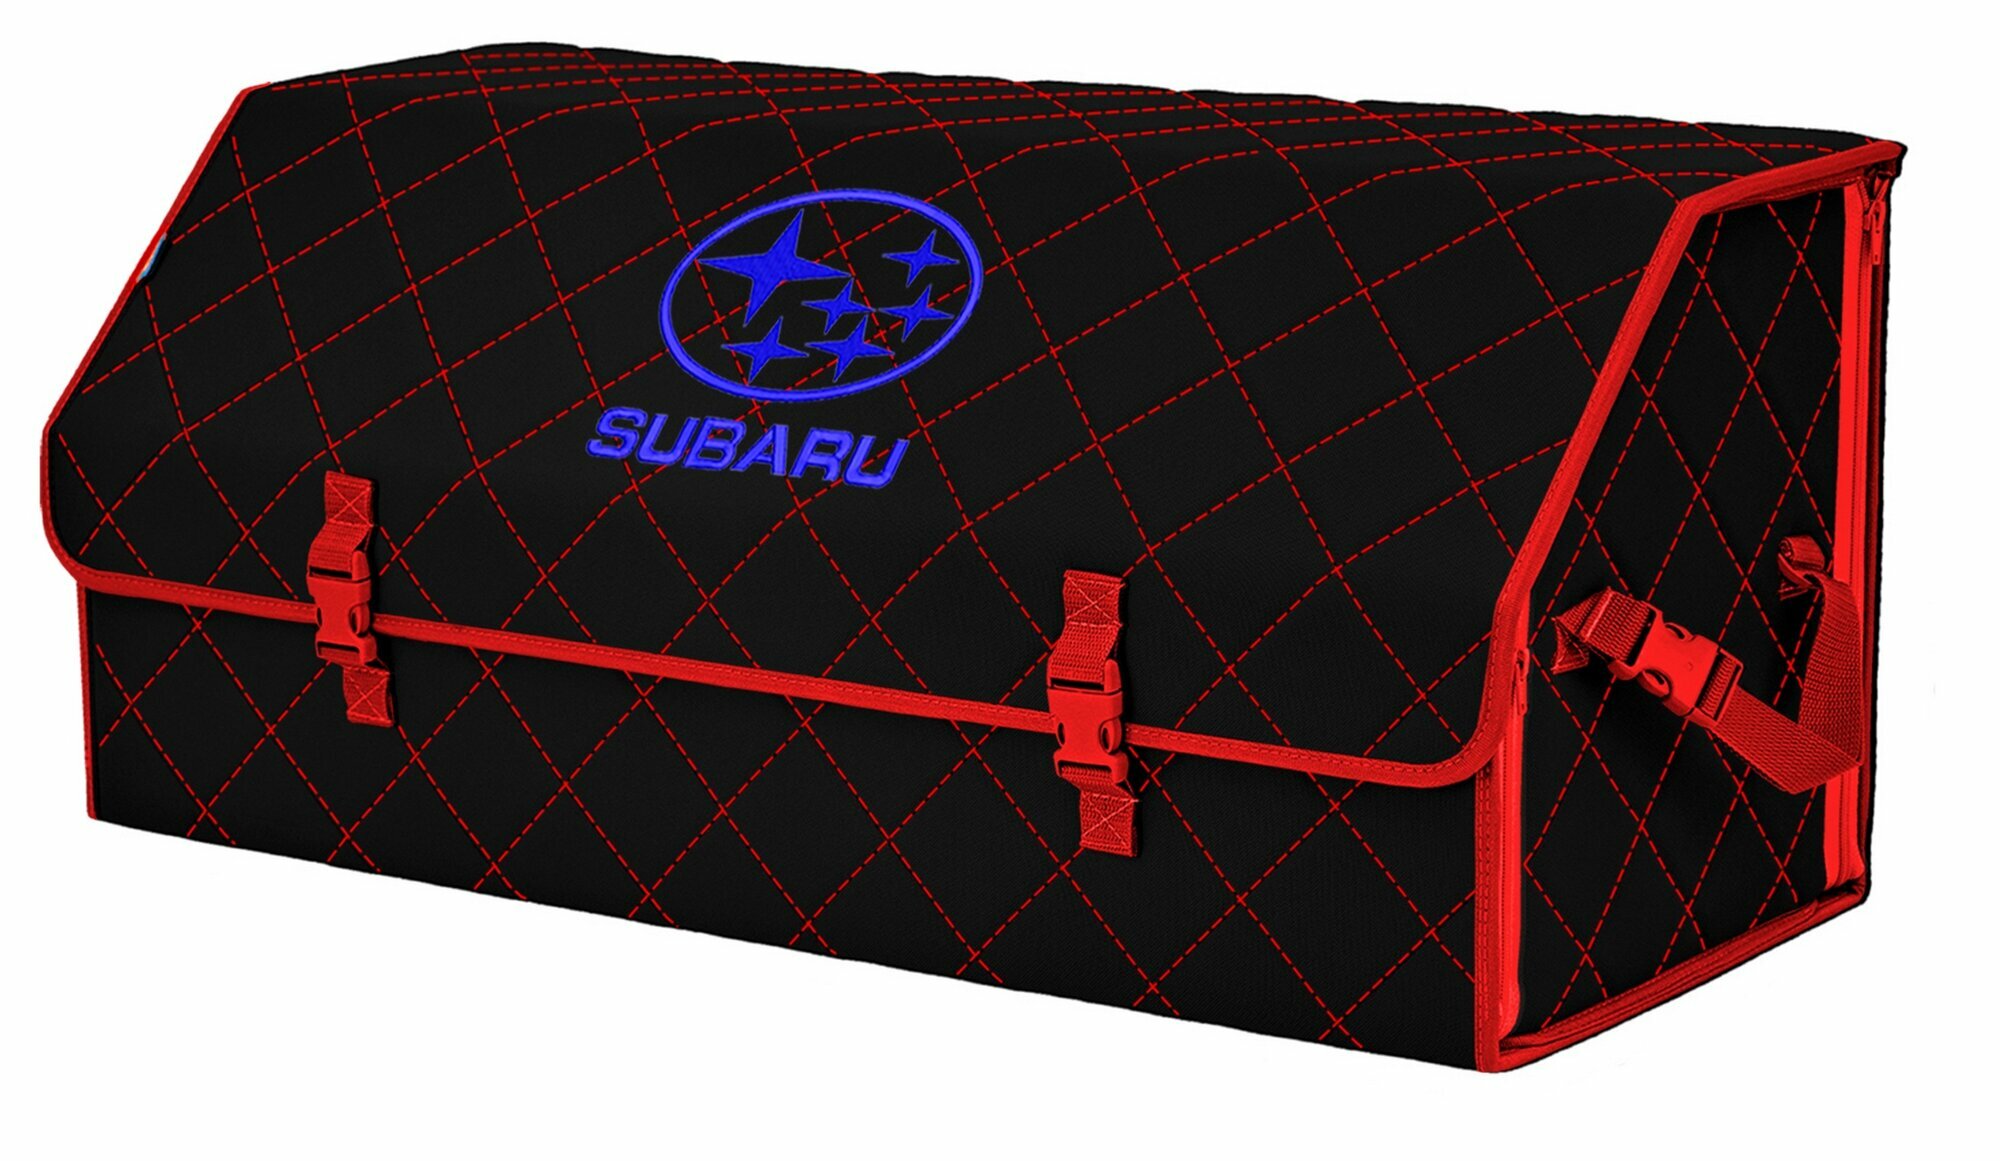 Органайзер-саквояж в багажник "Союз" (размер XXL). Цвет: черный с красной прострочкой Ромб и вышивкой Subaru (Субару).